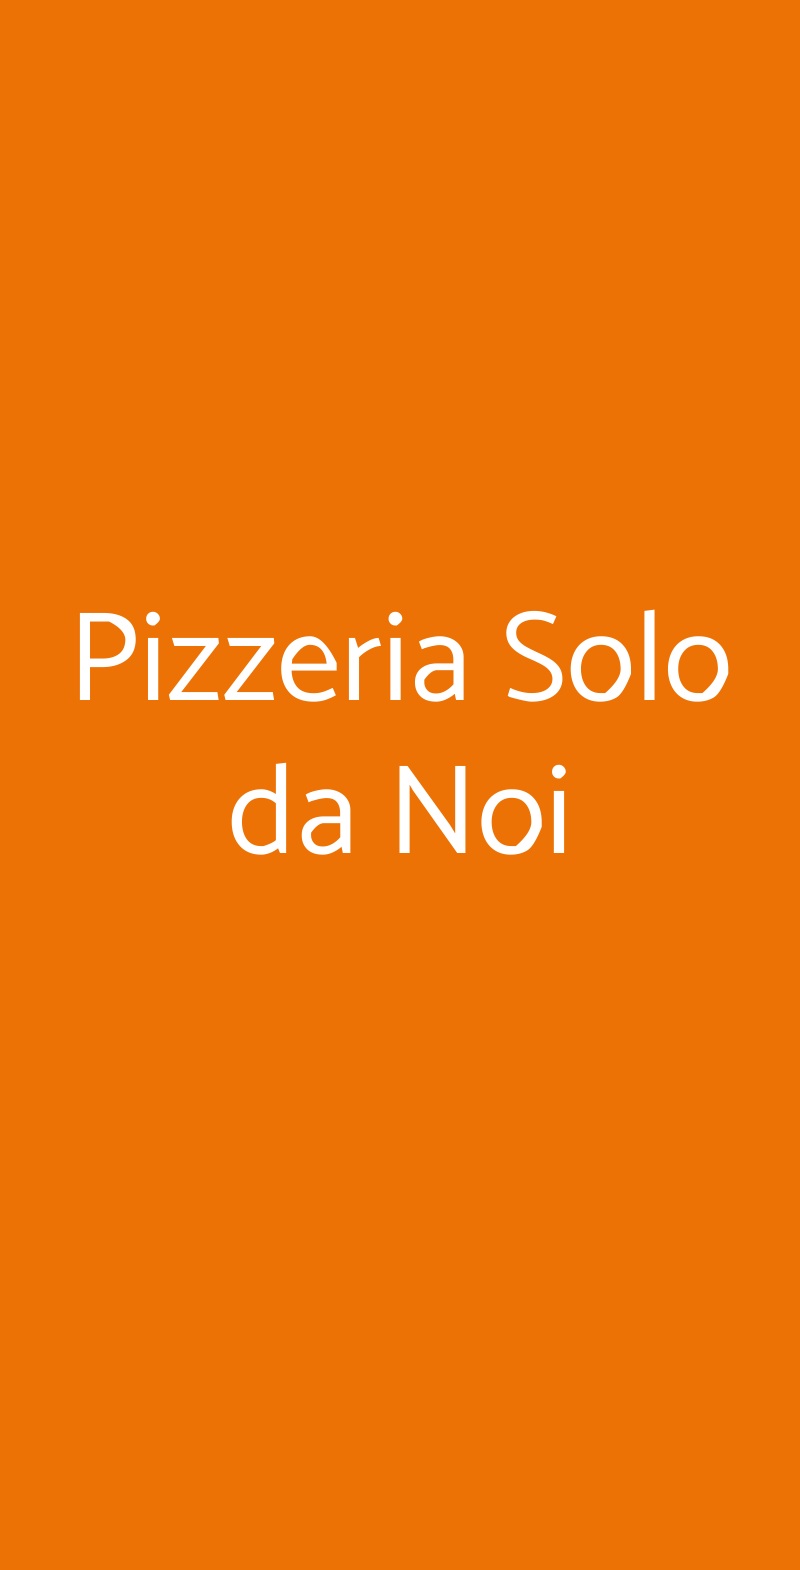 Pizzeria Solo da Noi Nerviano menù 1 pagina